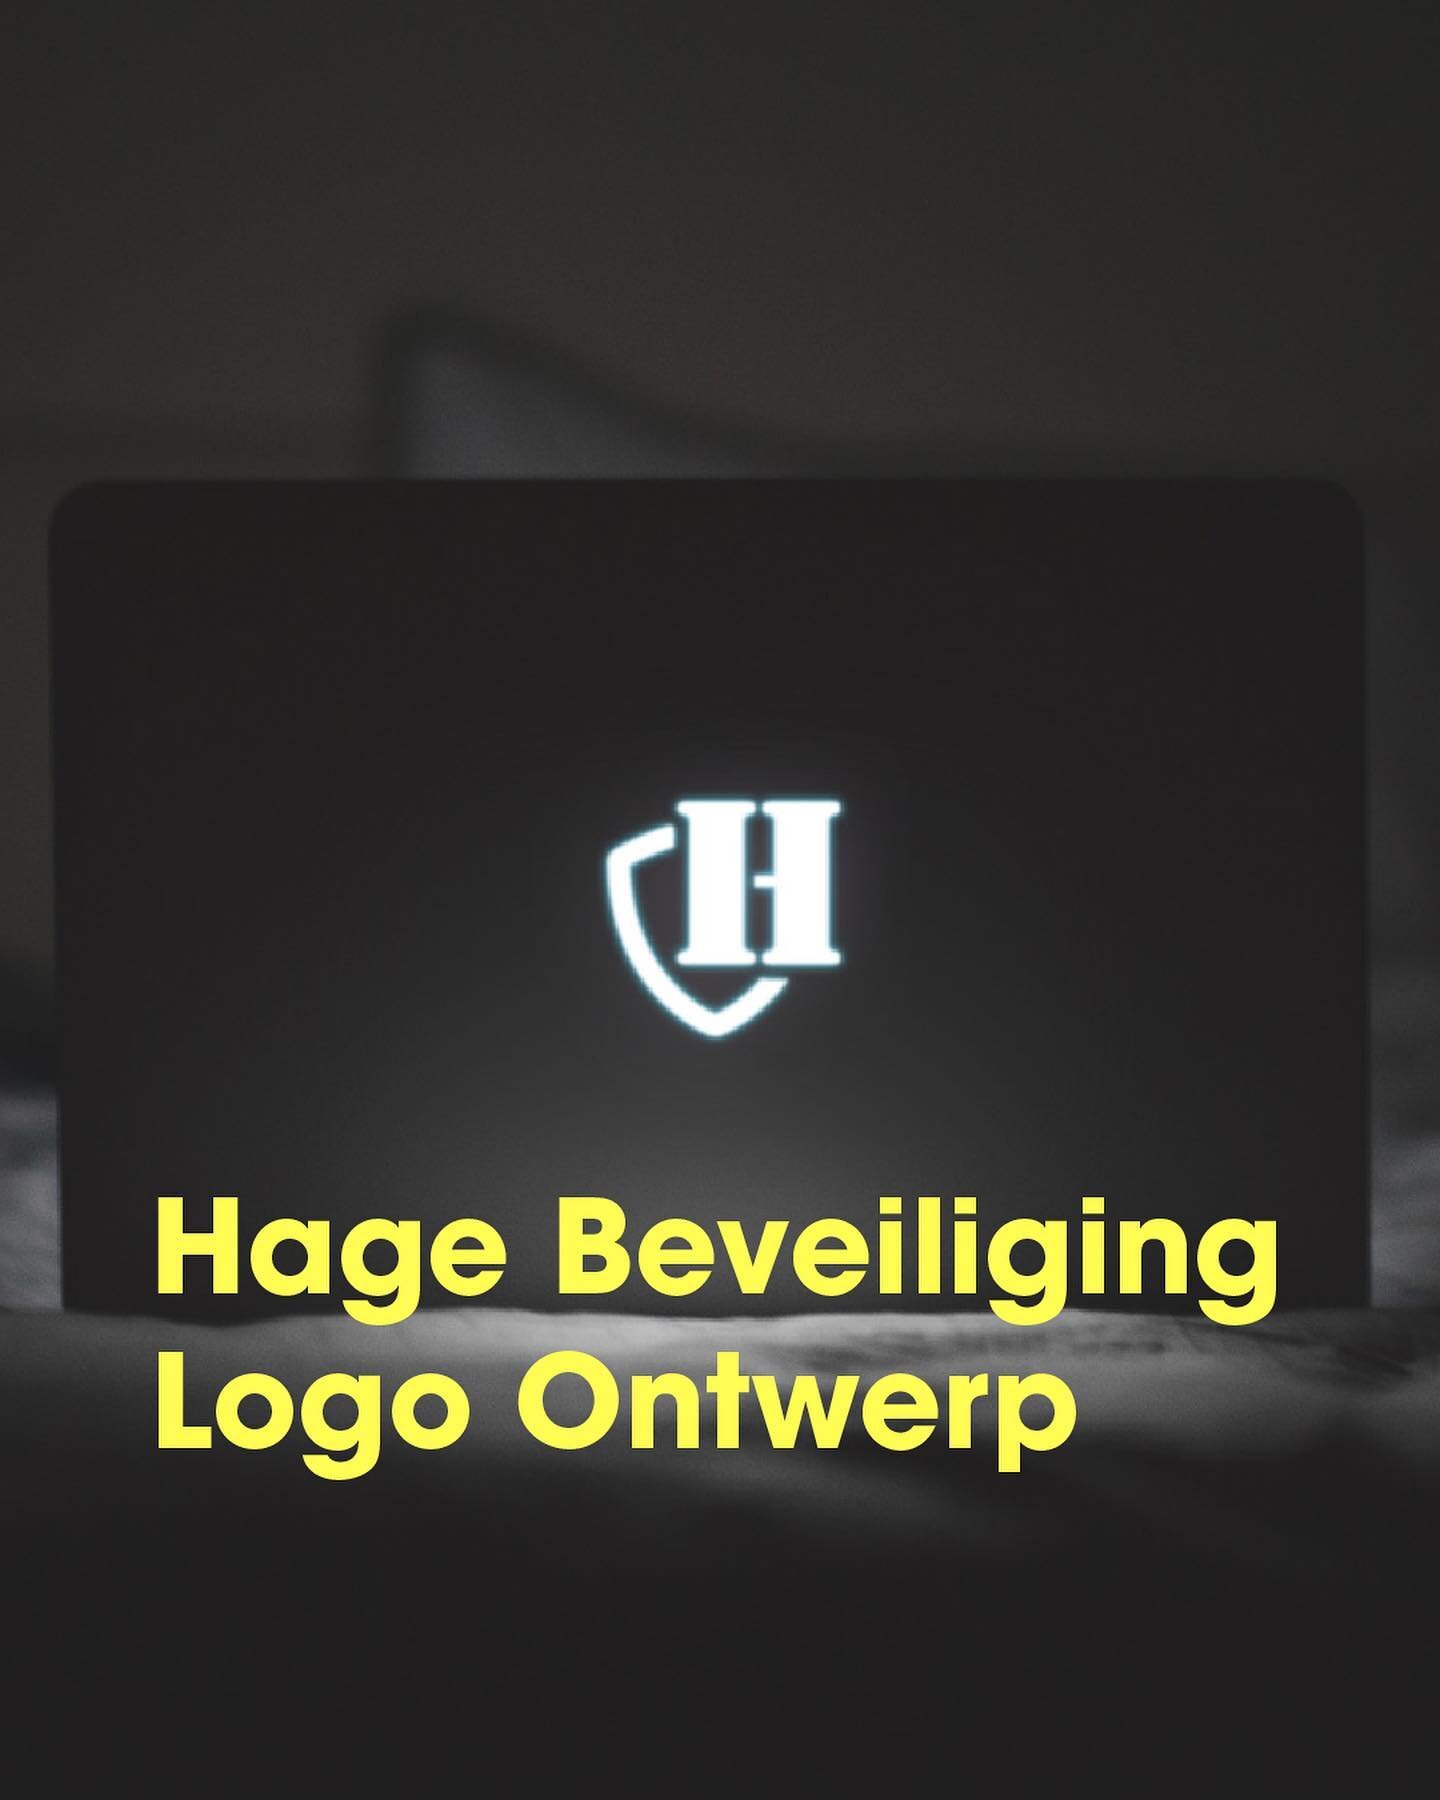 Het nieuwe logo en visitekaartje voor &lsquo;HageBeveiliging&rsquo; vertelt het verhaal van bescherming en vriendelijkheid💪🏼 Het is meer dan alleen een logo, het is een belofte van 'beveiliging met een glimlach.' 😄🛡️

#logodesign #logo #visitekaa